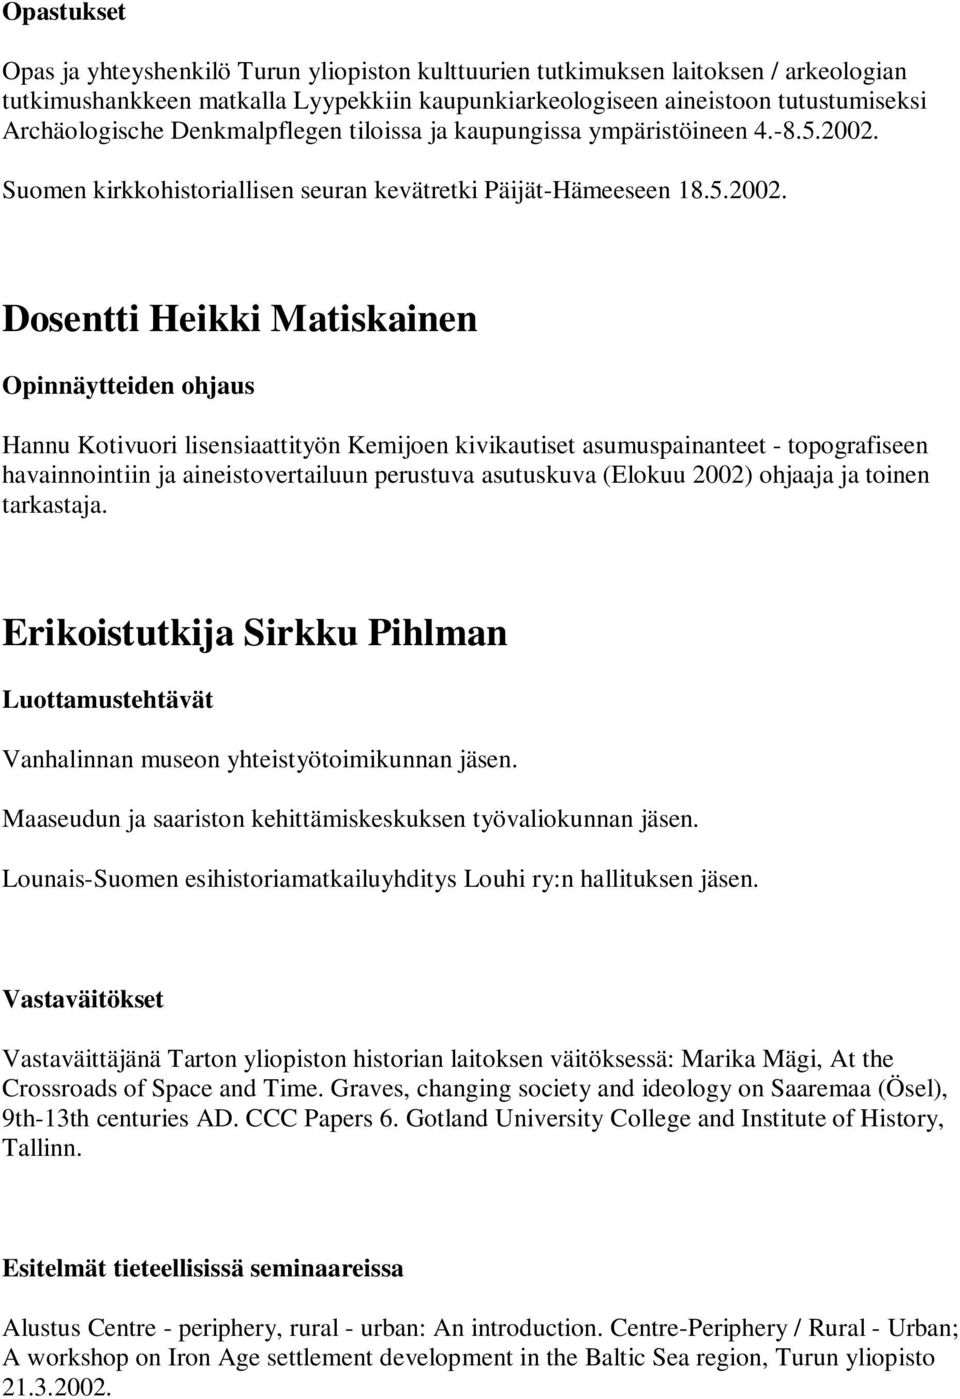 Suomen kirkkohistoriallisen seuran kevätretki Päijät-Hämeeseen 18.5.2002.